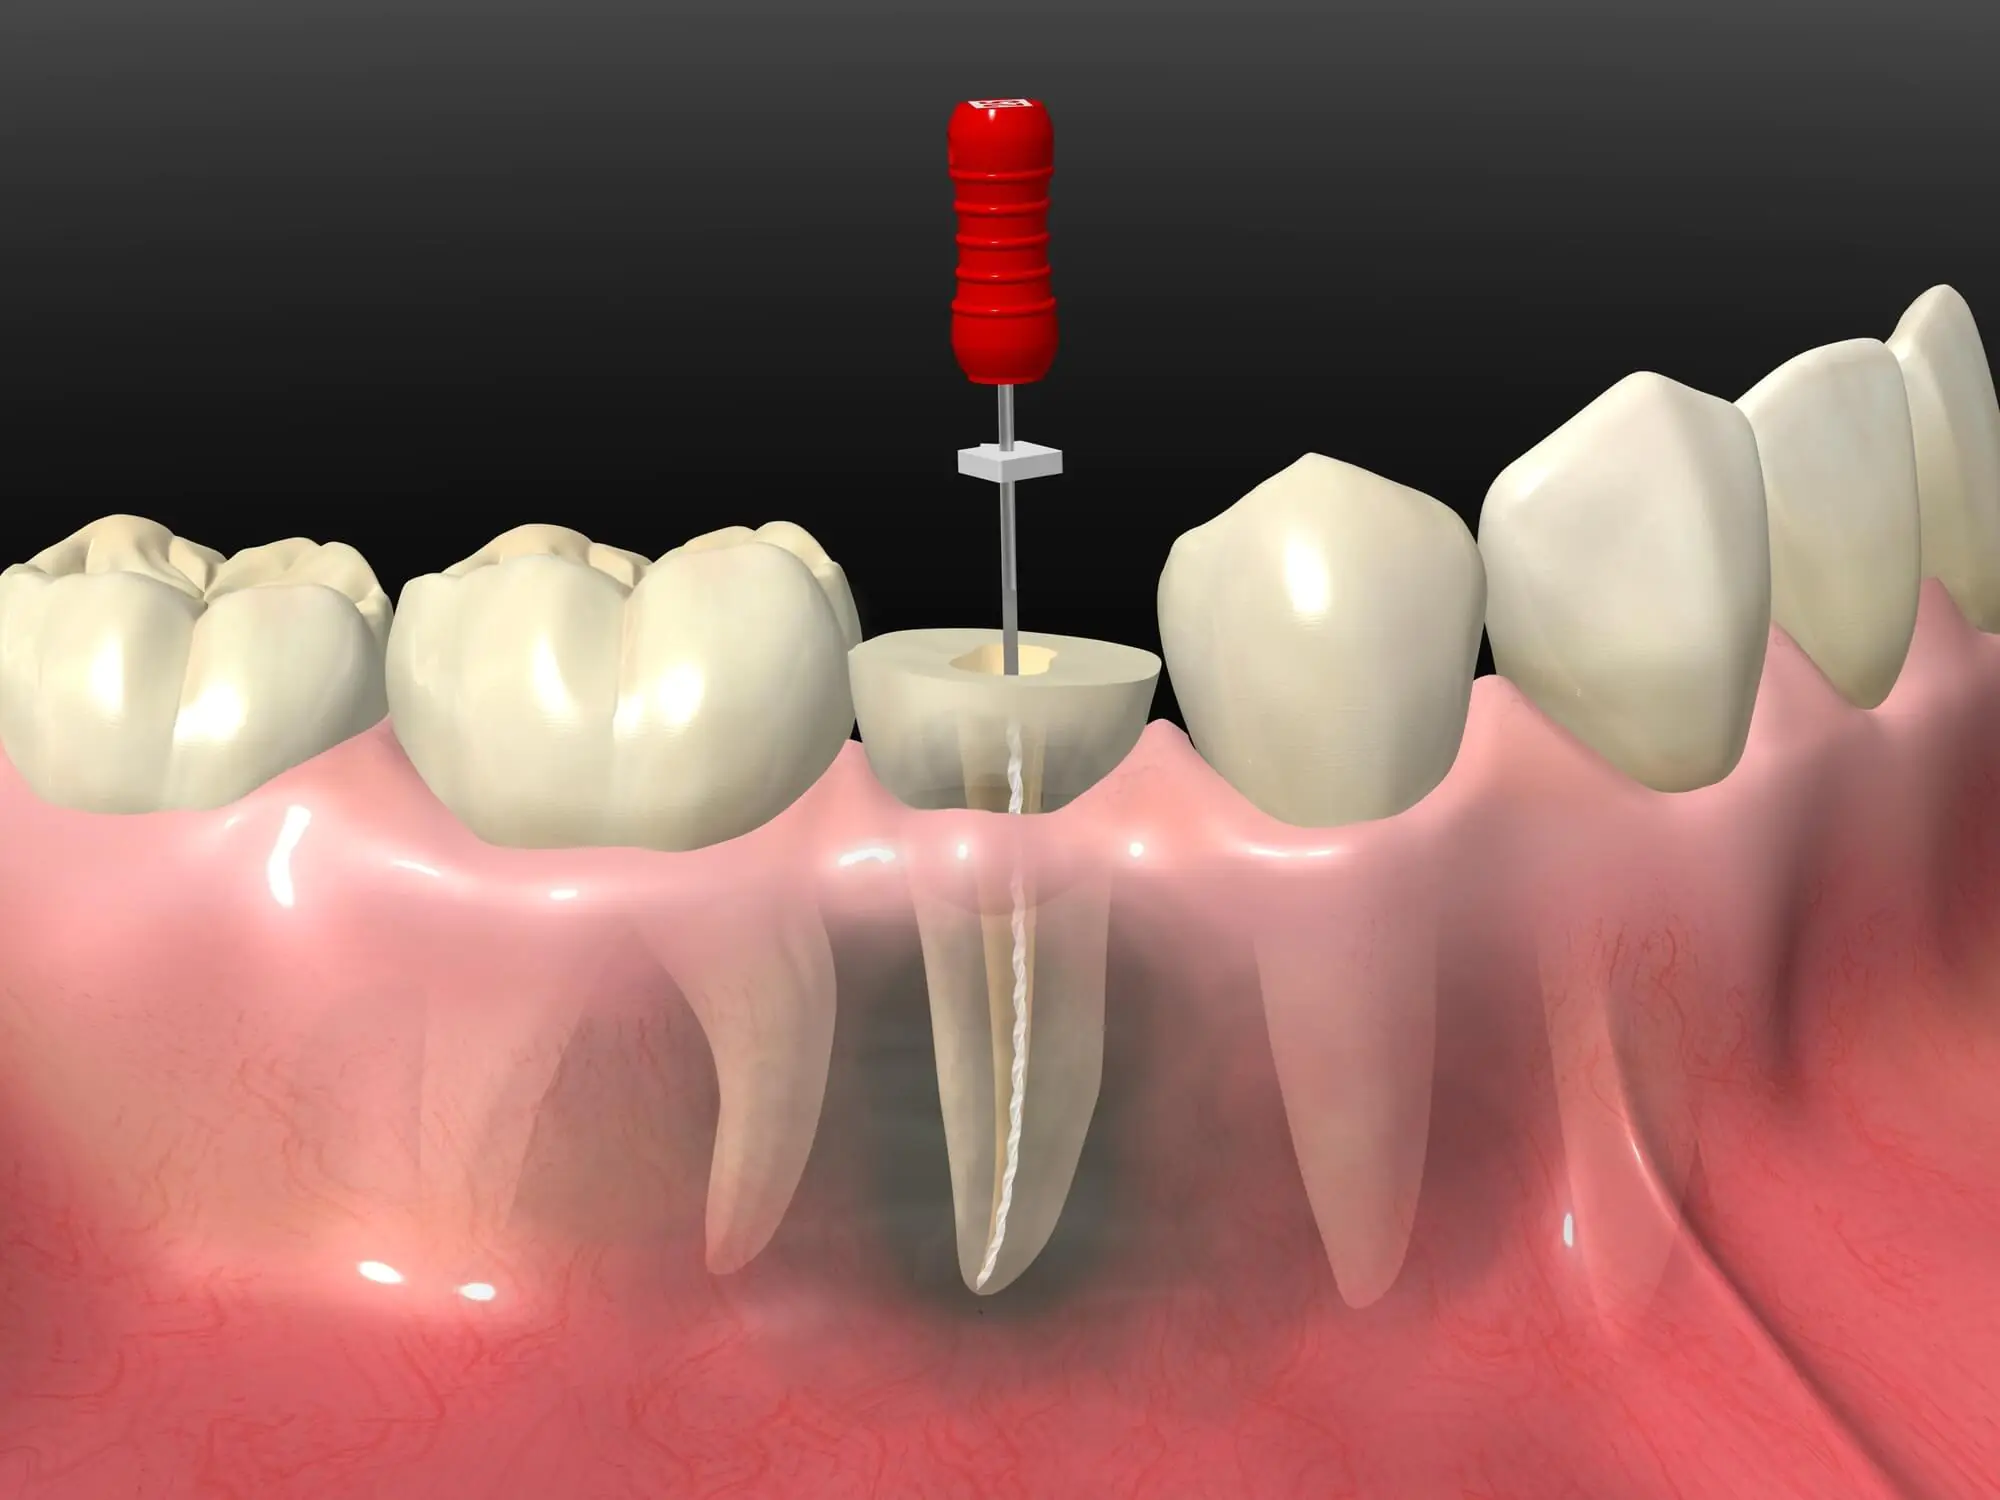 歯を残すための最後の治療である「根管治療」